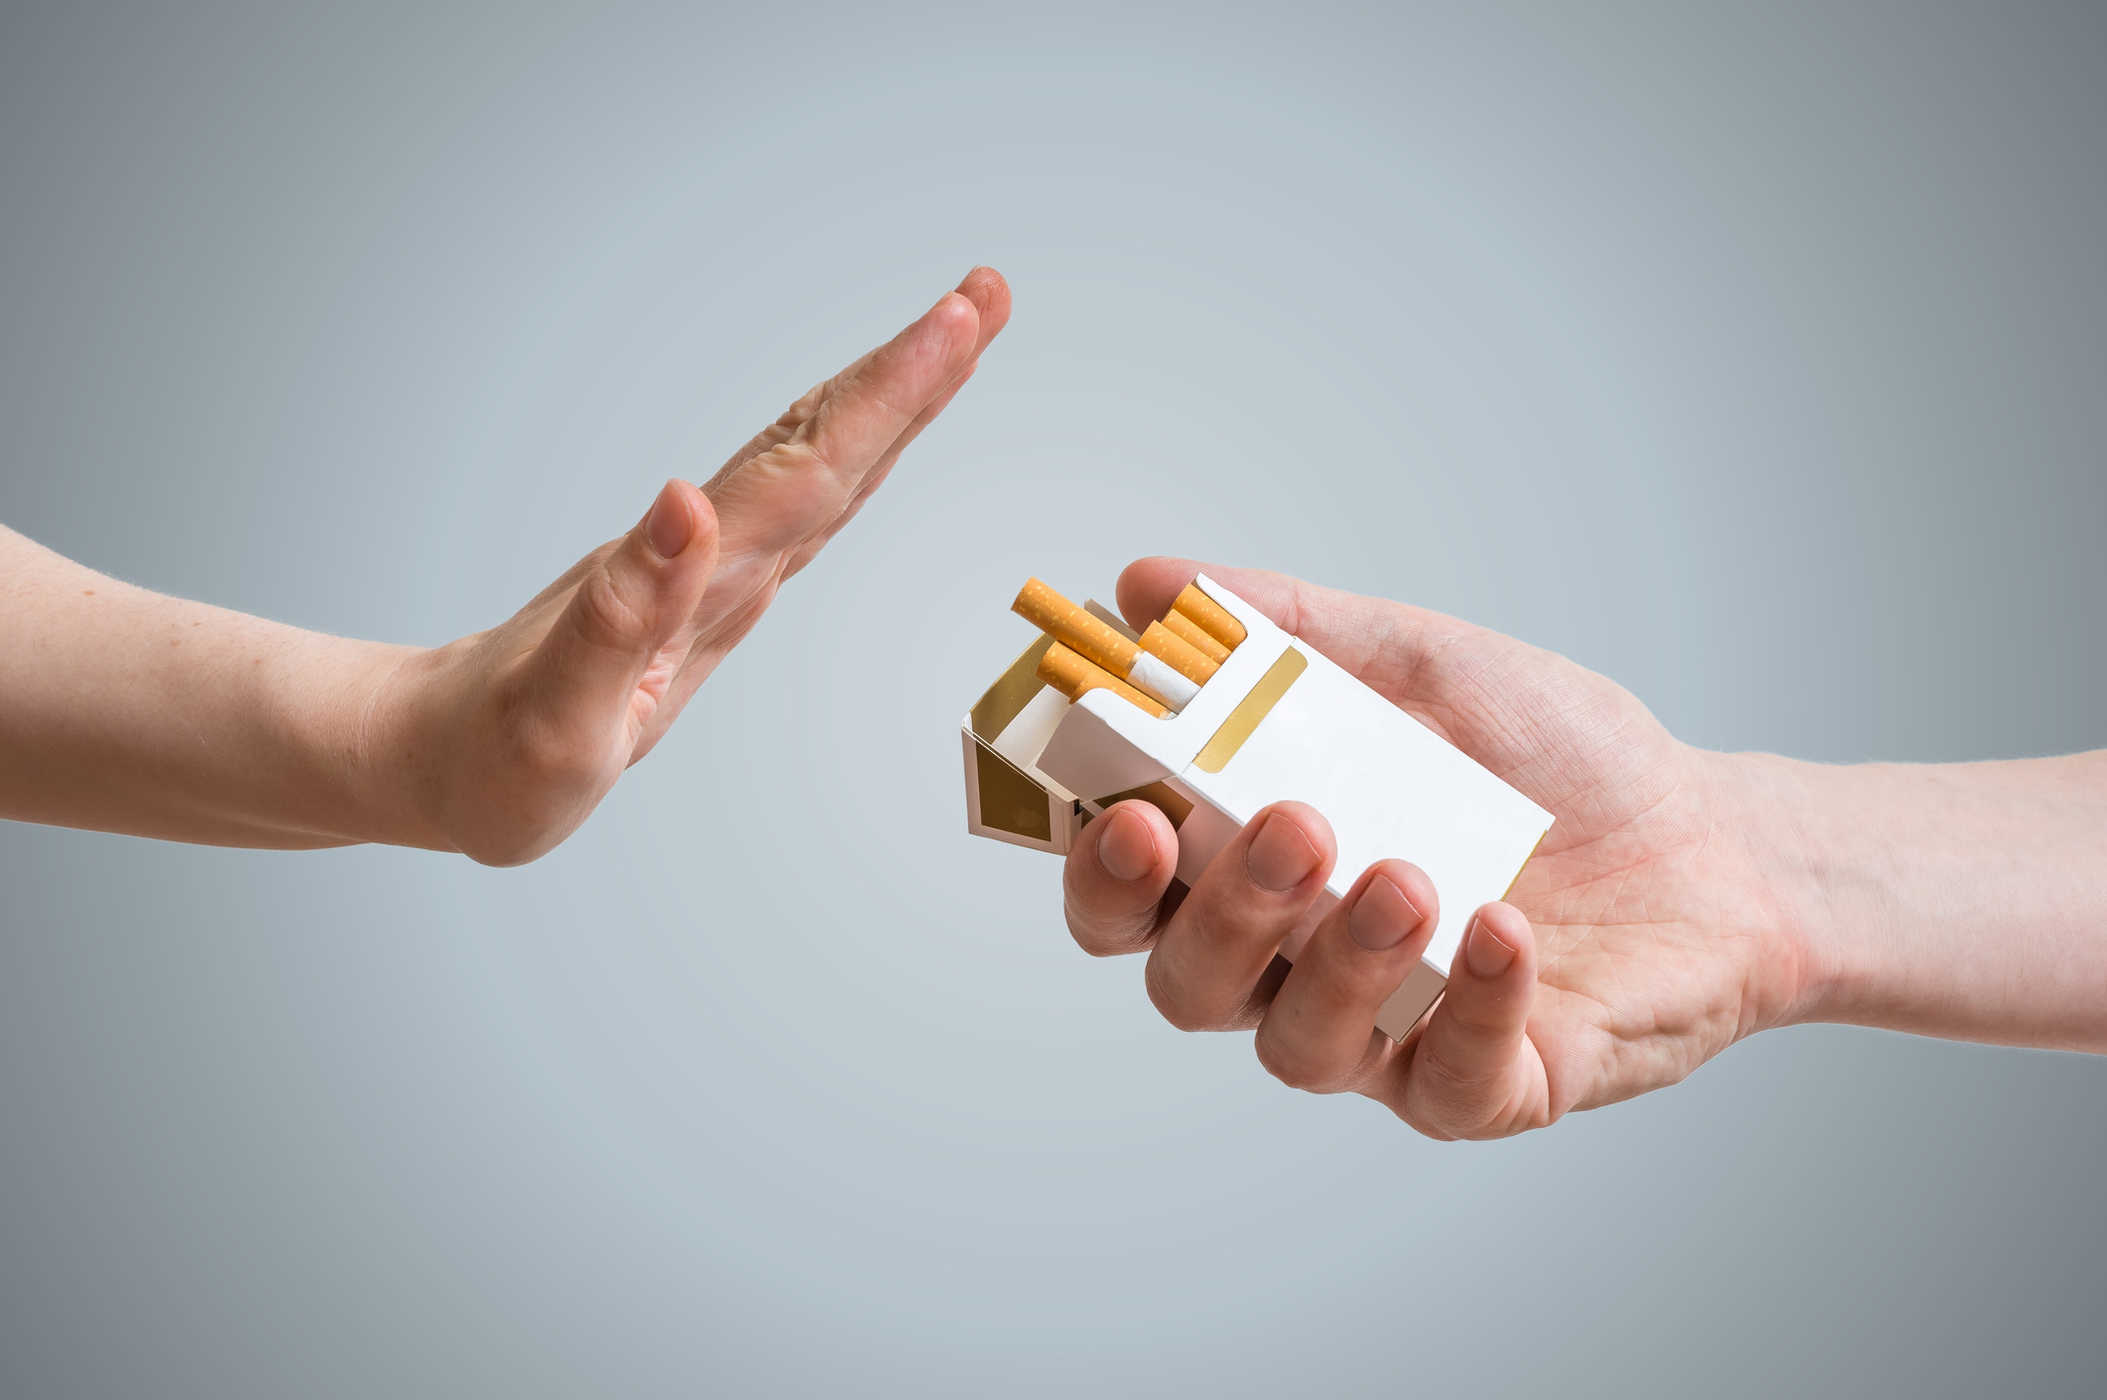 Bỏ thuốc lá giúp hỗ trợ điều trị rối laonj cương dương một cách hiệu quả. (Nguồn Internet)